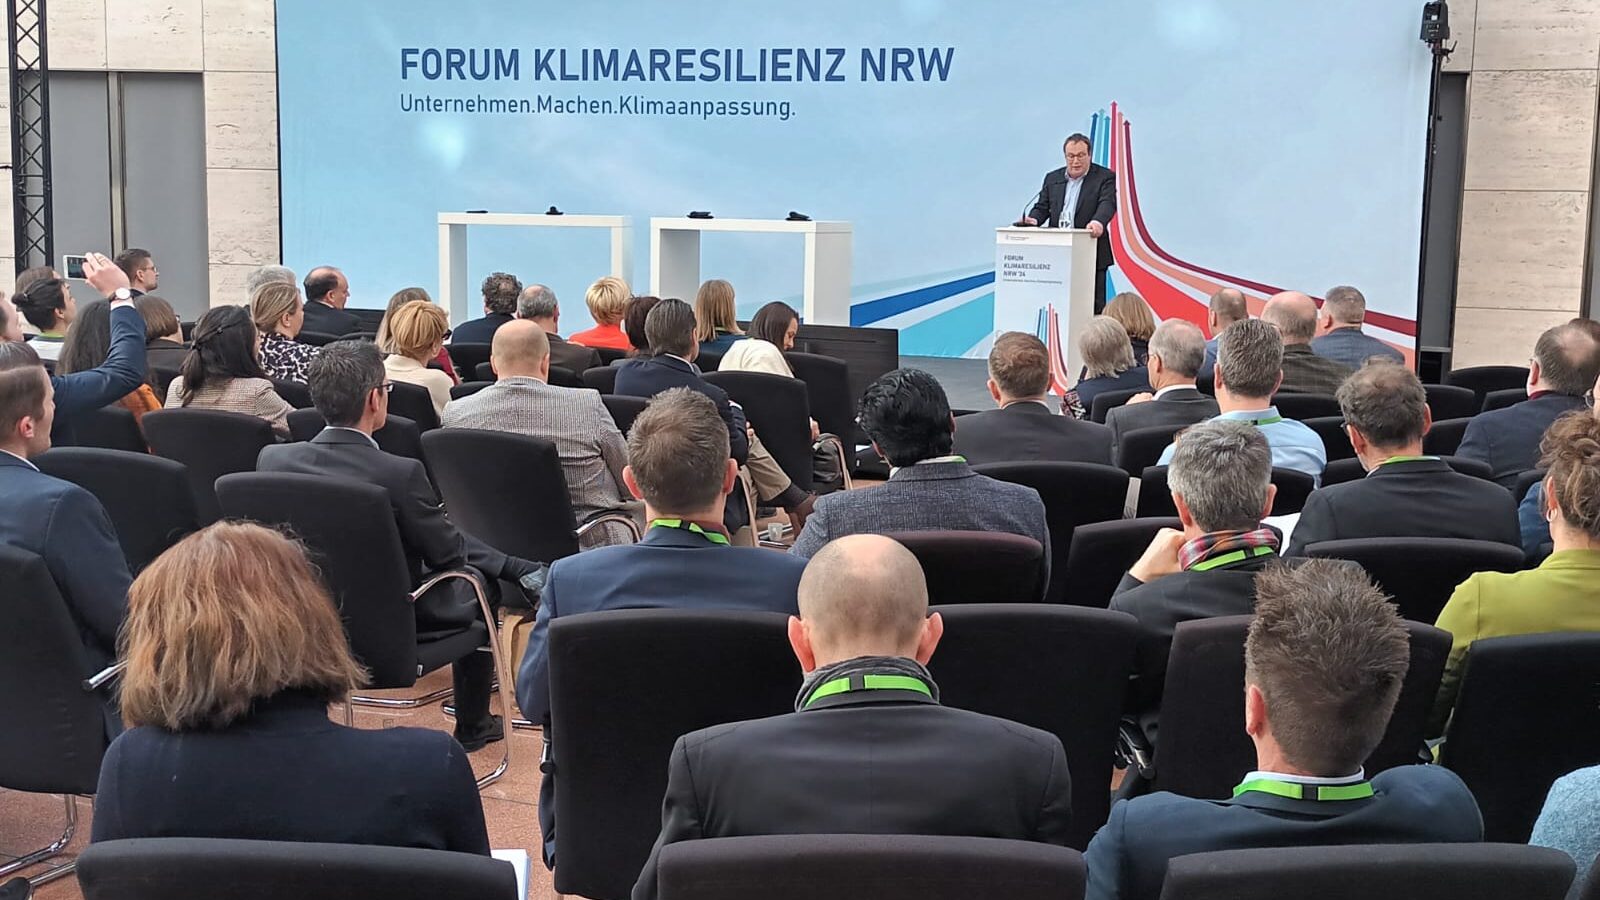 NRW-Umweltminister Krischer auf der Bühne